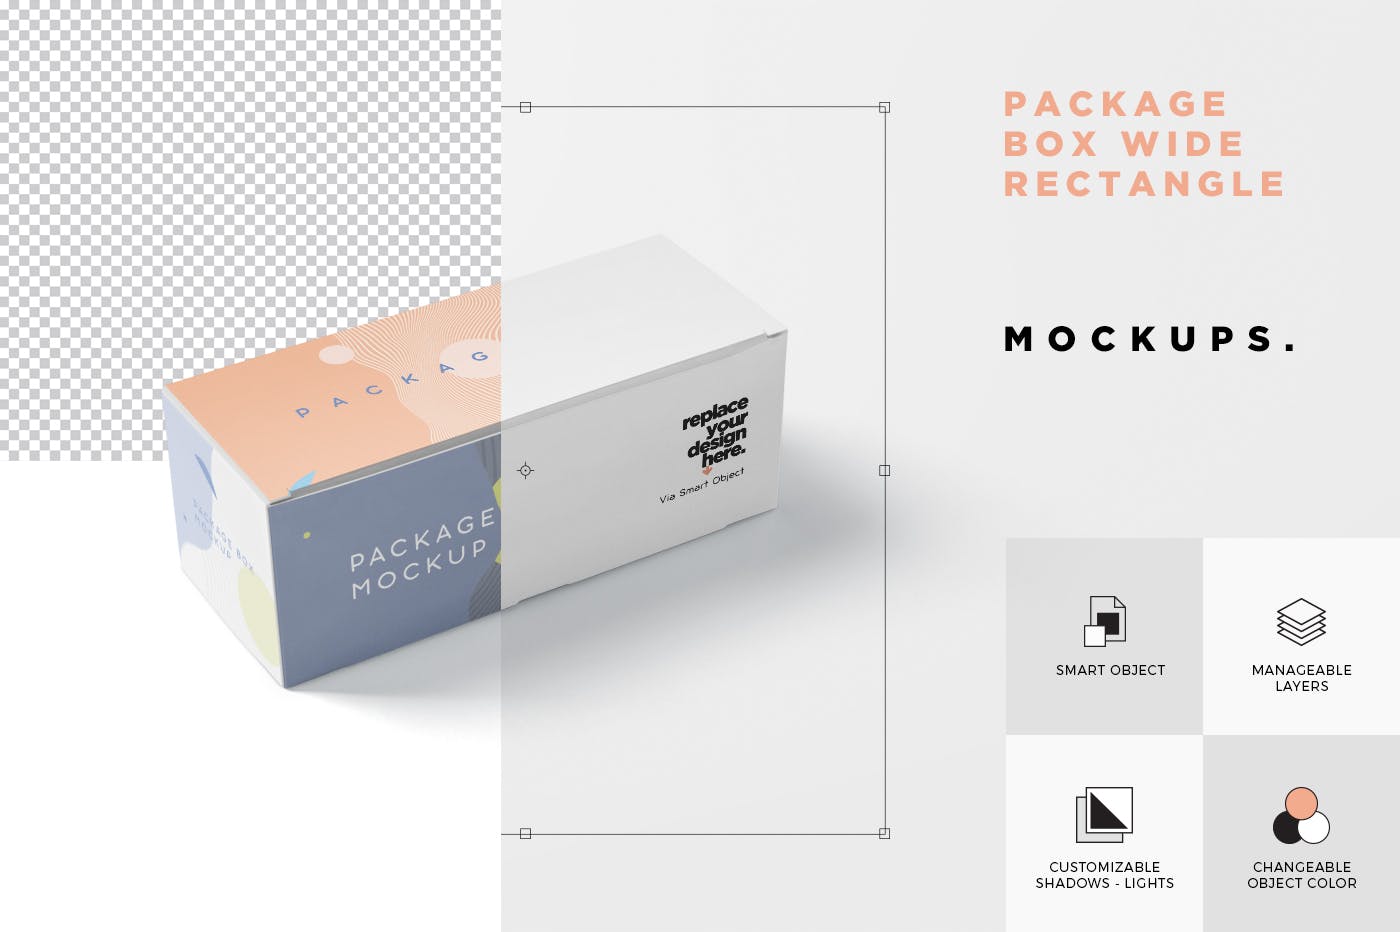 宽矩形包装盒外观设计效果图素材库精选 Package Box Mock-Up Set – Wide Rectangle插图(6)